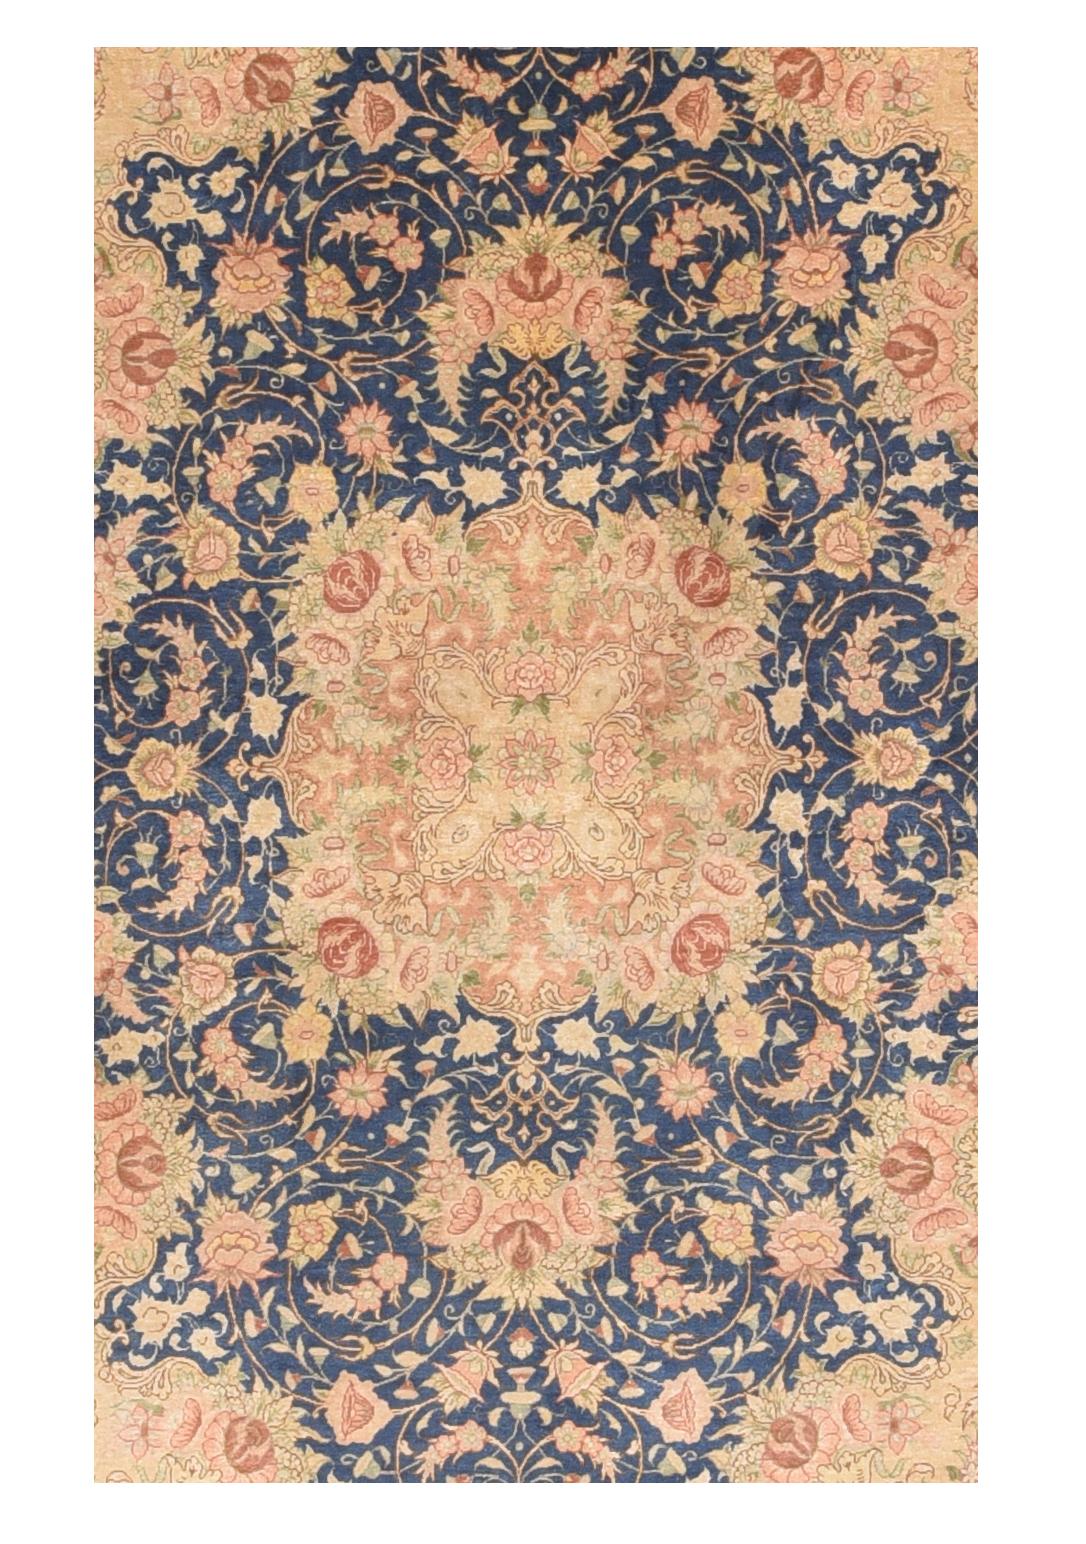 Les tapis de Qom (ou Qum, Ghom, Ghum) sont fabriqués dans la province de Qom en Iran, à environ 100 km au sud de Téhéran. Bien que le tissage de tapis à Qom n'ait été une industrie majeure qu'au cours des 100 dernières années, les luxueux tapis de